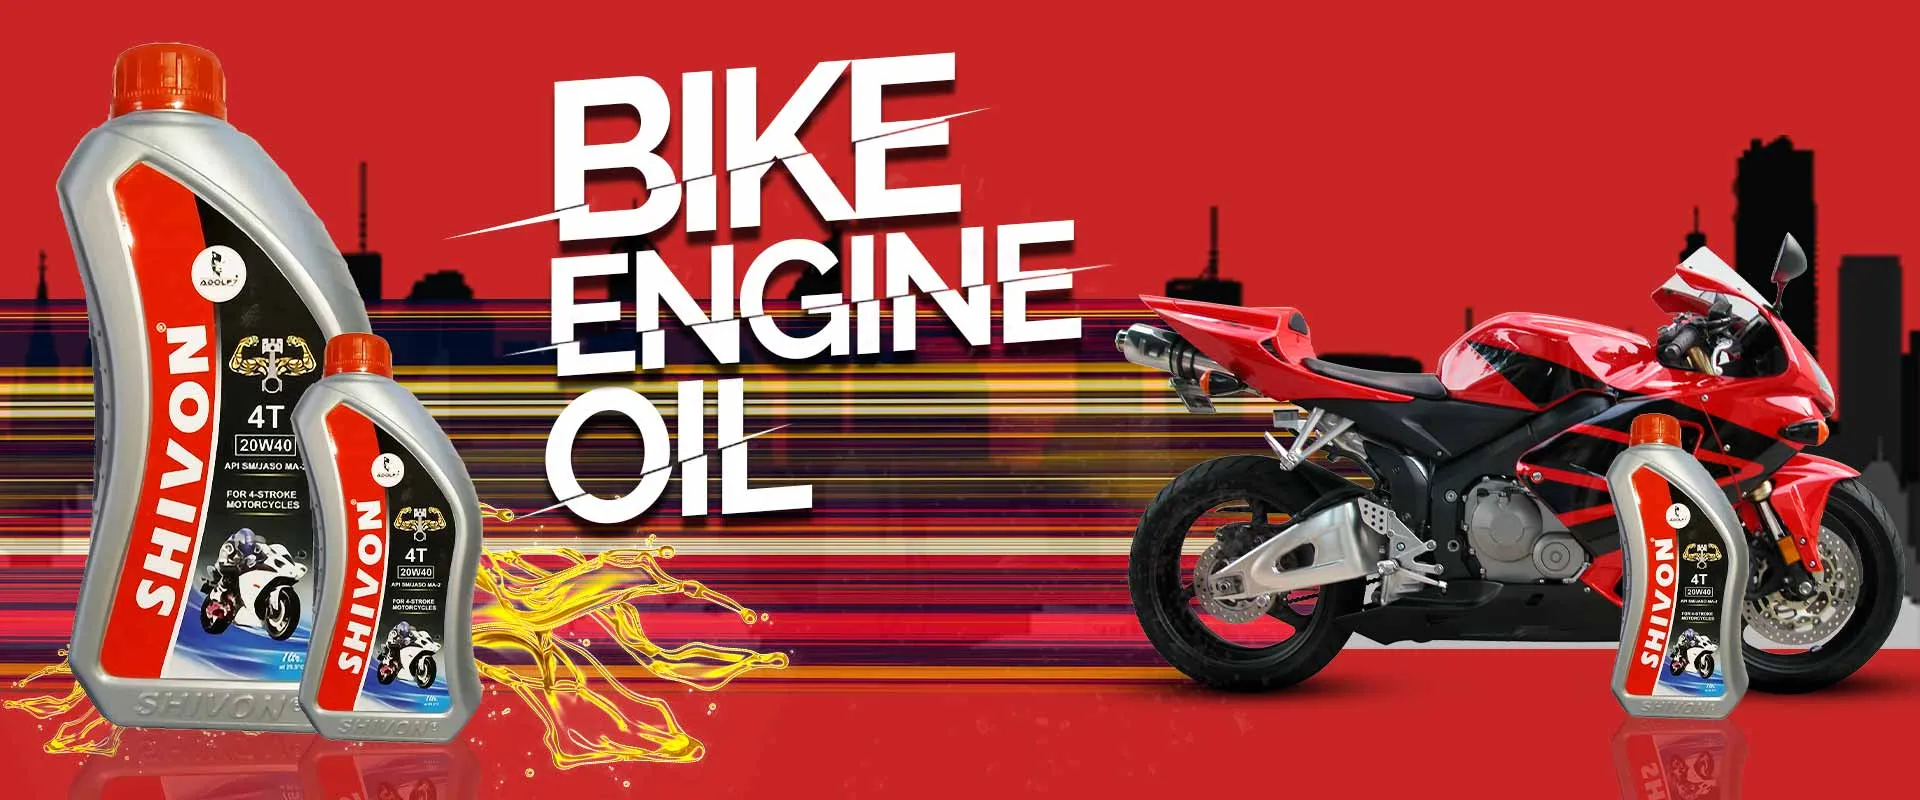 Bike Engine Oil In Assandh